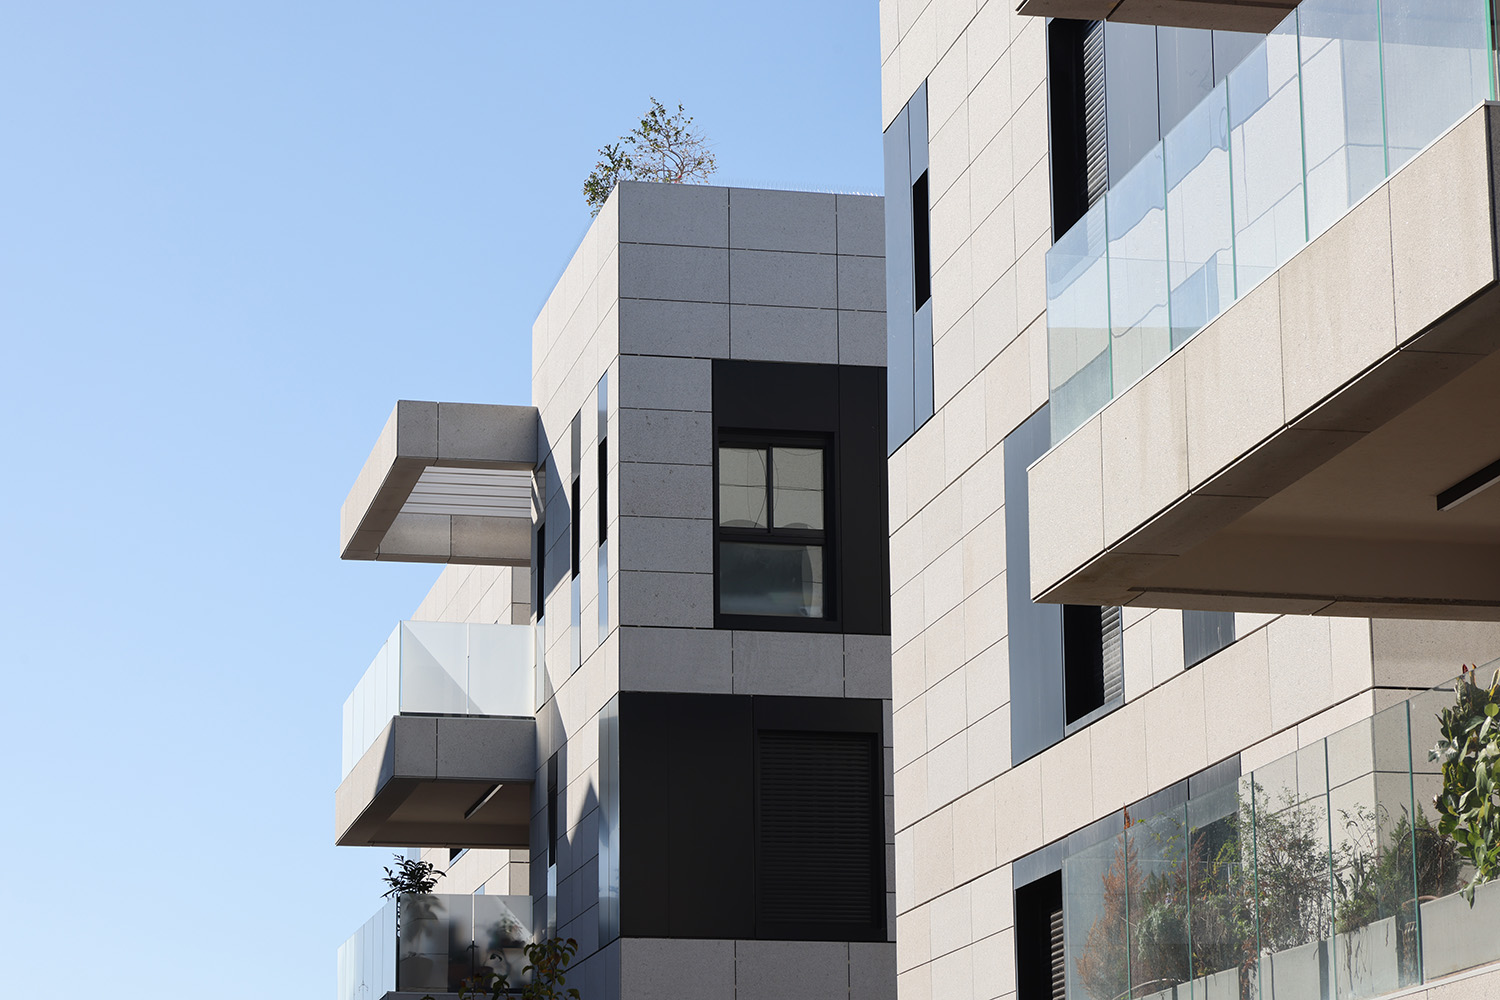 תמונה של מרפסות המבנה בפרוייקט CLE בקיסריה